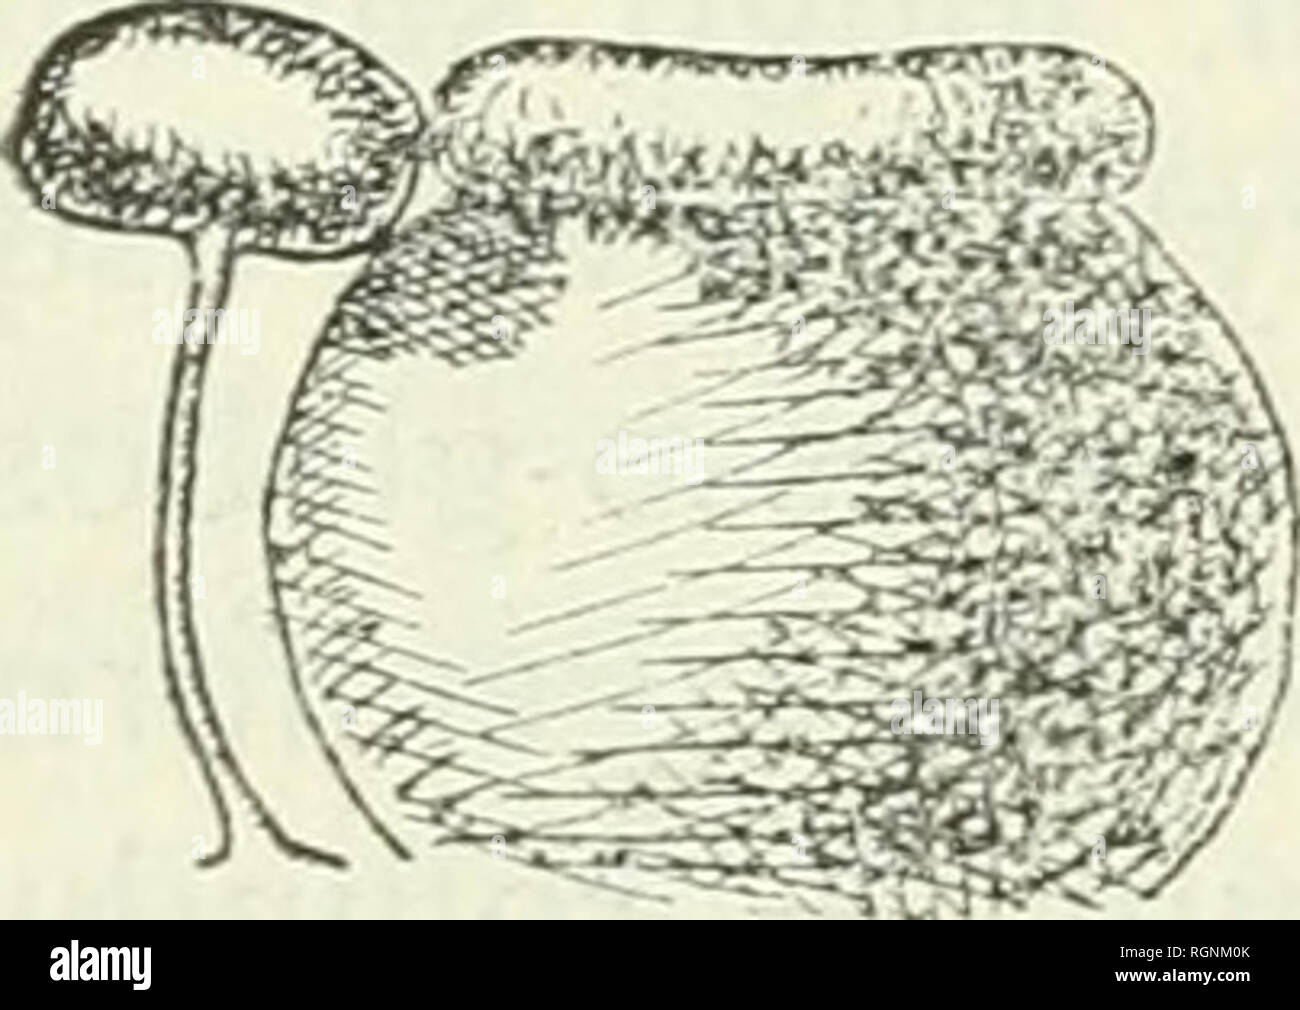 . Bulletin du Jardin botanique de Buitenzorg. Plants -- Indonesia; Plants. Fig. d. Pothos quinqucvenosus, V. A.V.R. — (? P. Alberfisii, Engl., forma vel var.). Eupotlws, Papiiani. — P. Albertisii EnGL. affinis. — Foliorum petiolus 4'/2—7'/2 cm. longus, apice 1 cm. latus, truncatus, vix auriculatus, angulis rotundatis, venis collectivis 5 utrinque ; lamina ovata, 8—10X3—4cm., ad vel infra médium latissima, basi rotundata vel subtruncato-rotundata, apice sensim acuminata, venis collectivis 5 utrinque, interiore e medio costae nascente. Pedunculus + 7'/2 cm. longus, postremo paullo longior.. Spat Stock Photo